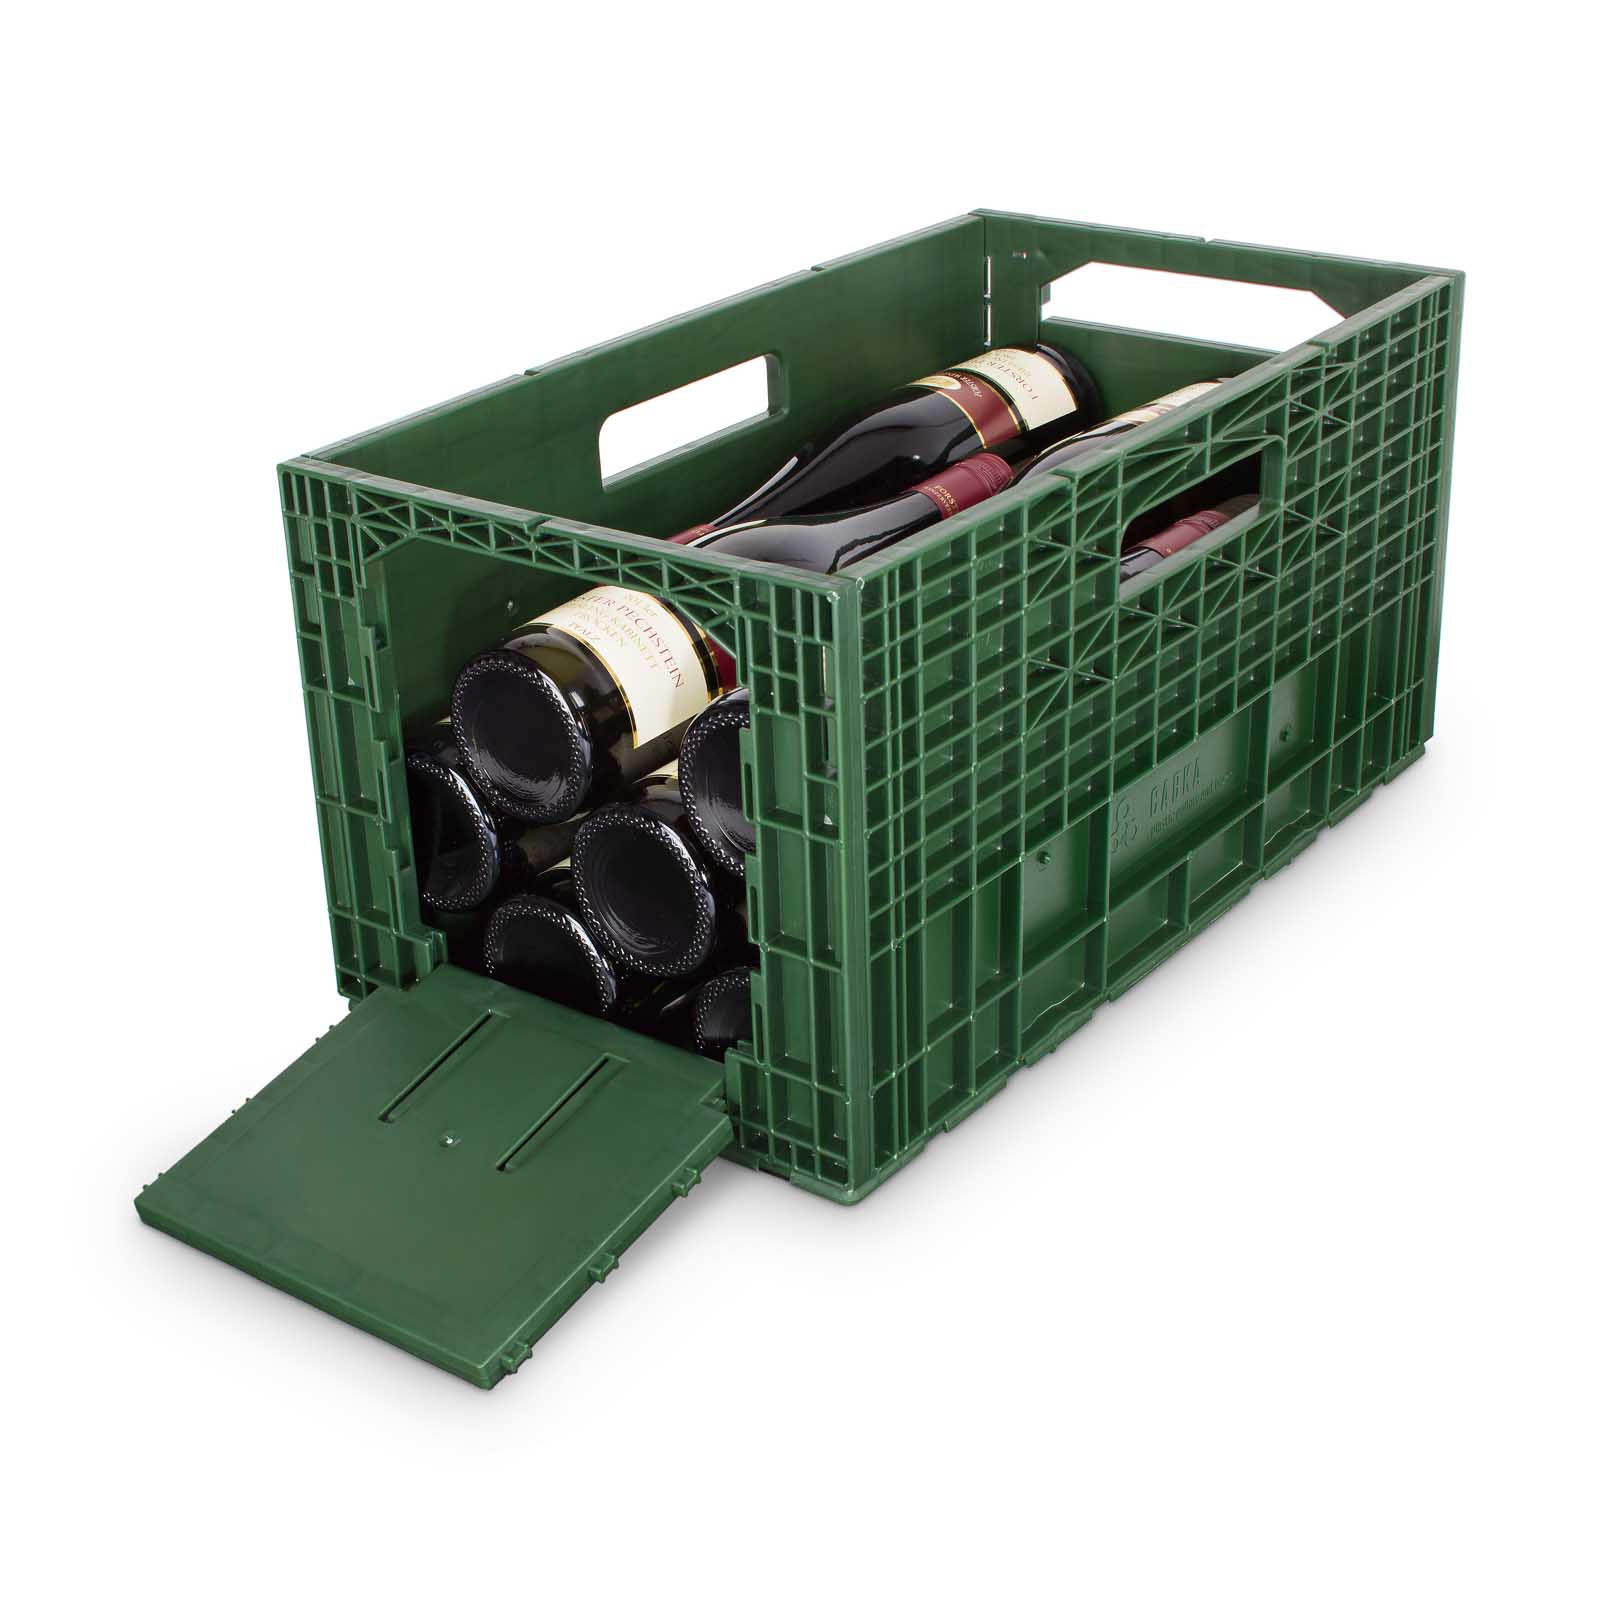 Weinbox - Das Weintransport- und Lagersystem dunkelgrün